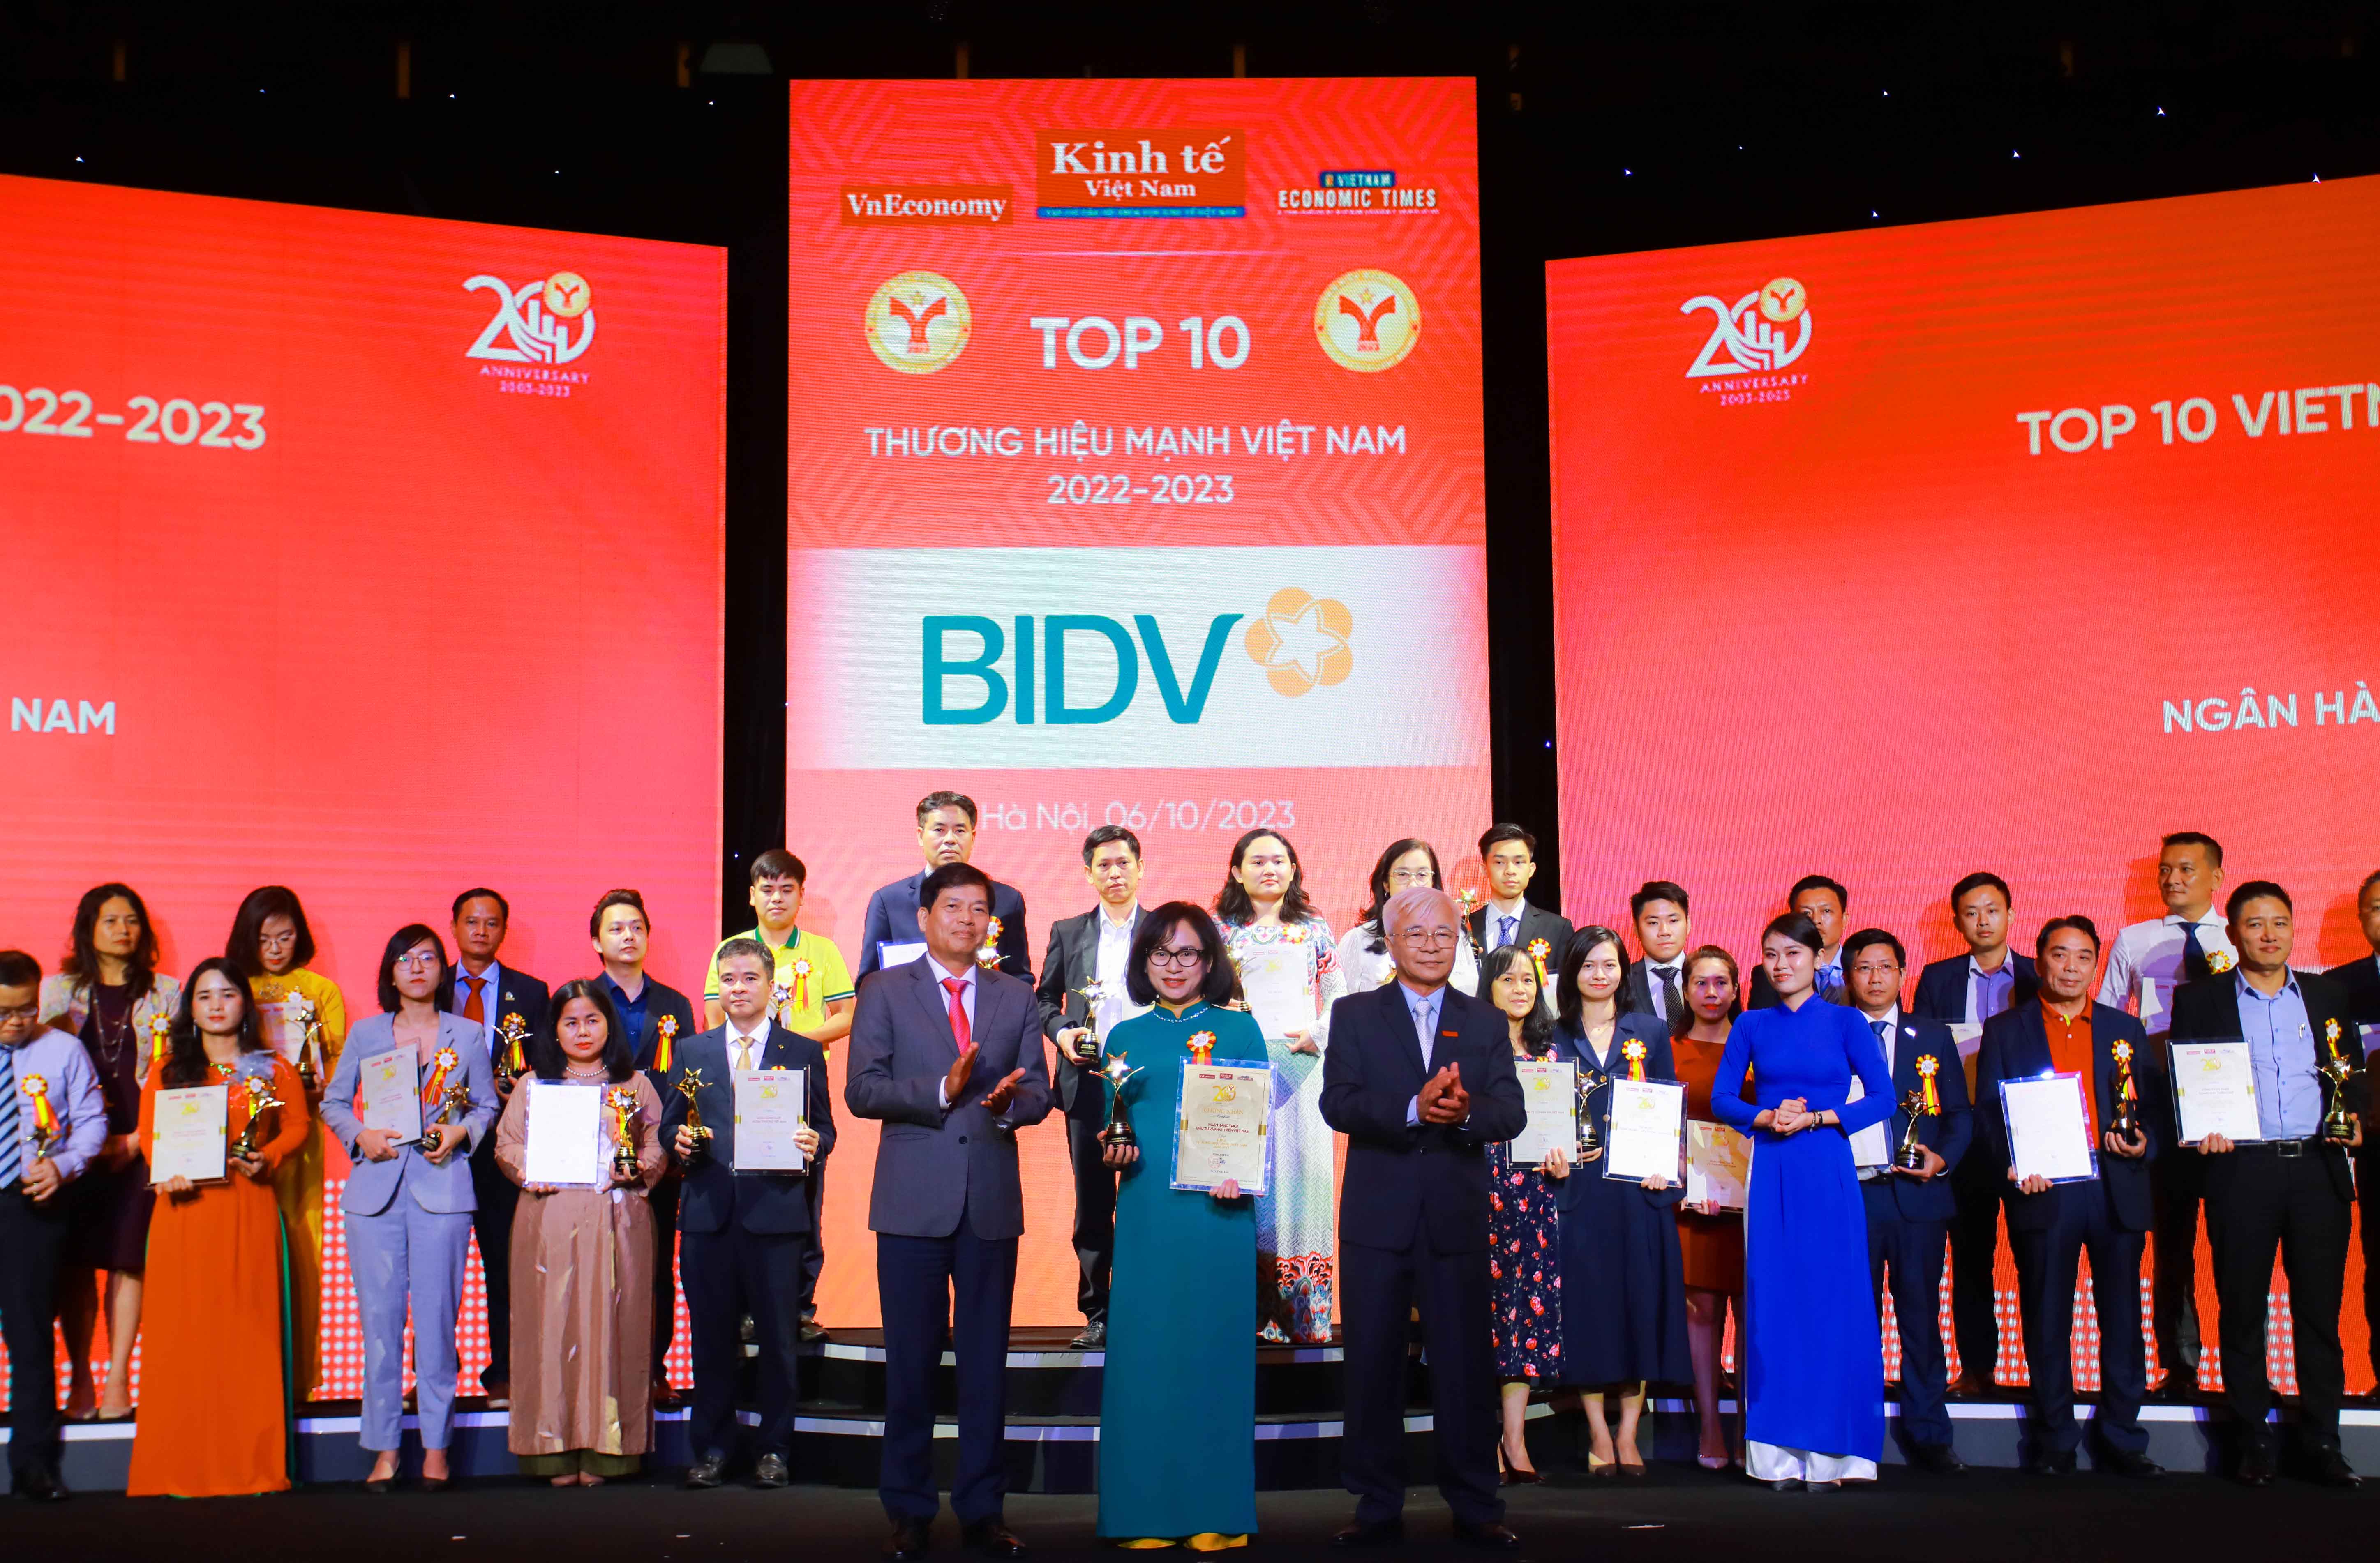 Đại diện BIDV nhận giải thưởng "Top 10 thương hiệu mạnh Việt Nam"